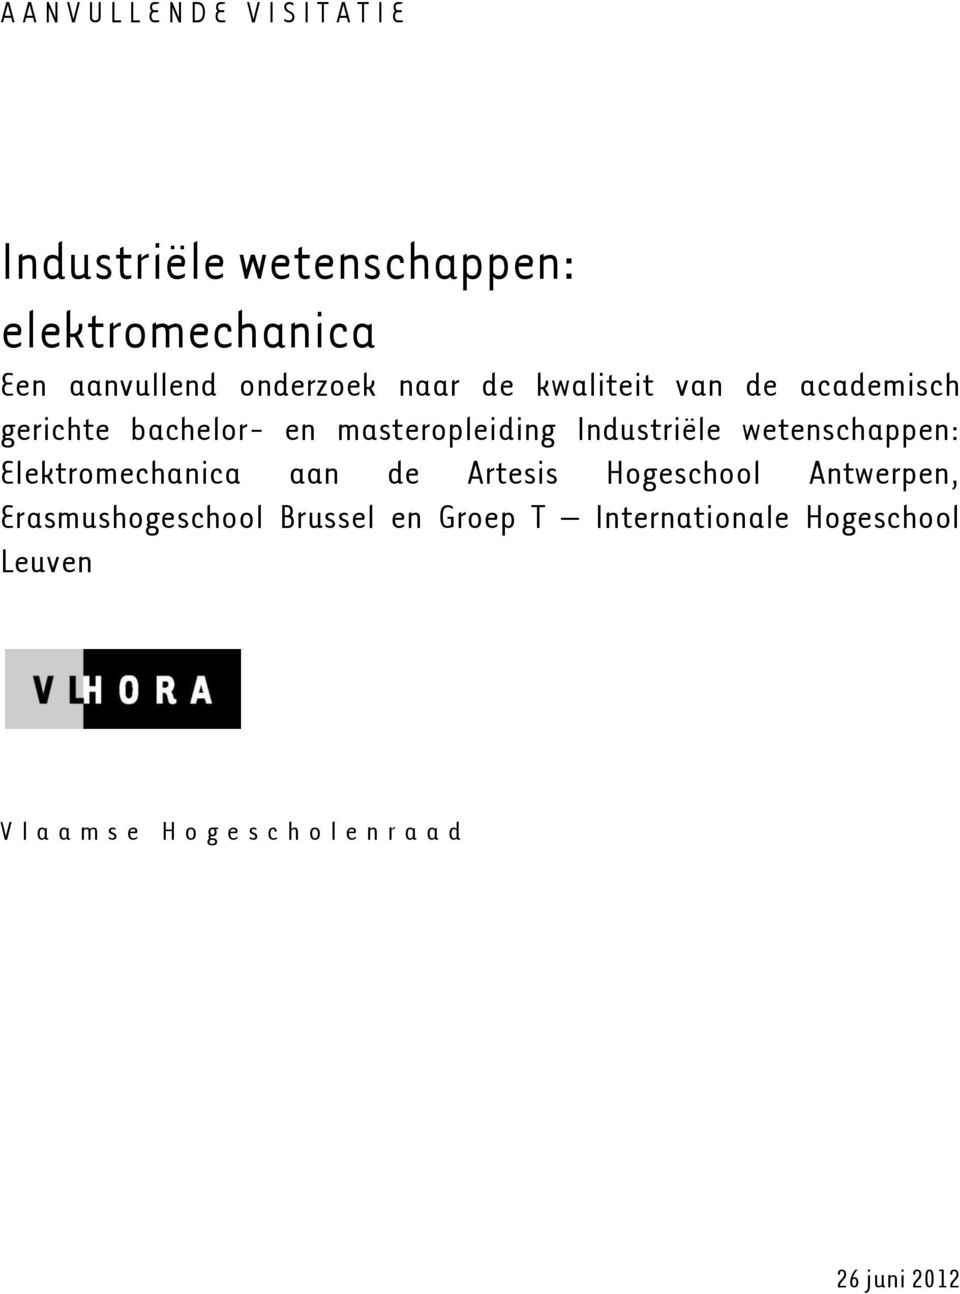 Industriële wetenschappen: Elektromechanica aan de Artesis Hogeschool Antwerpen,